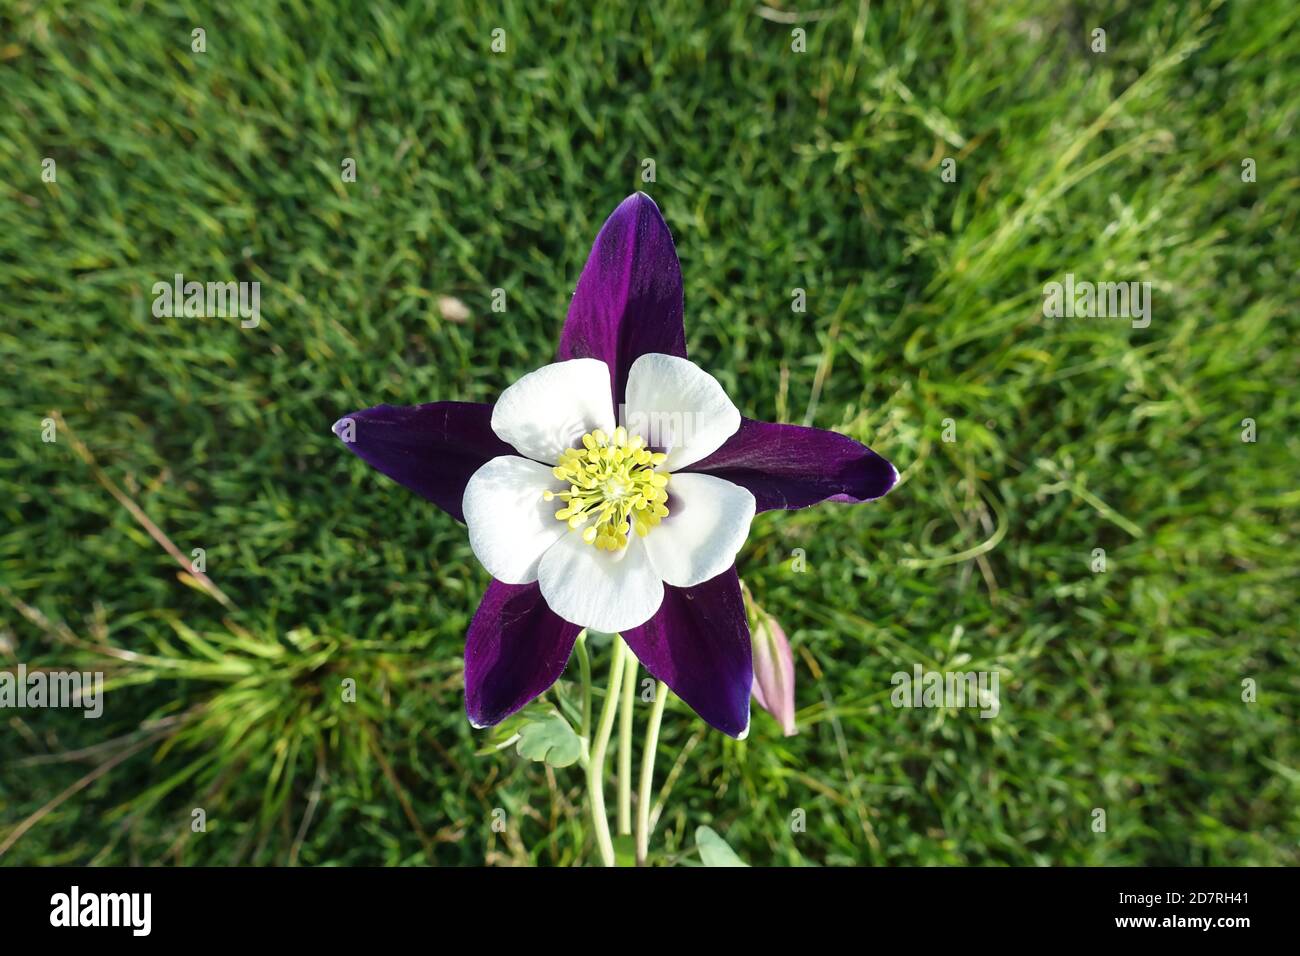 Beautiful purple and white Aquilegia flower Stock Photo